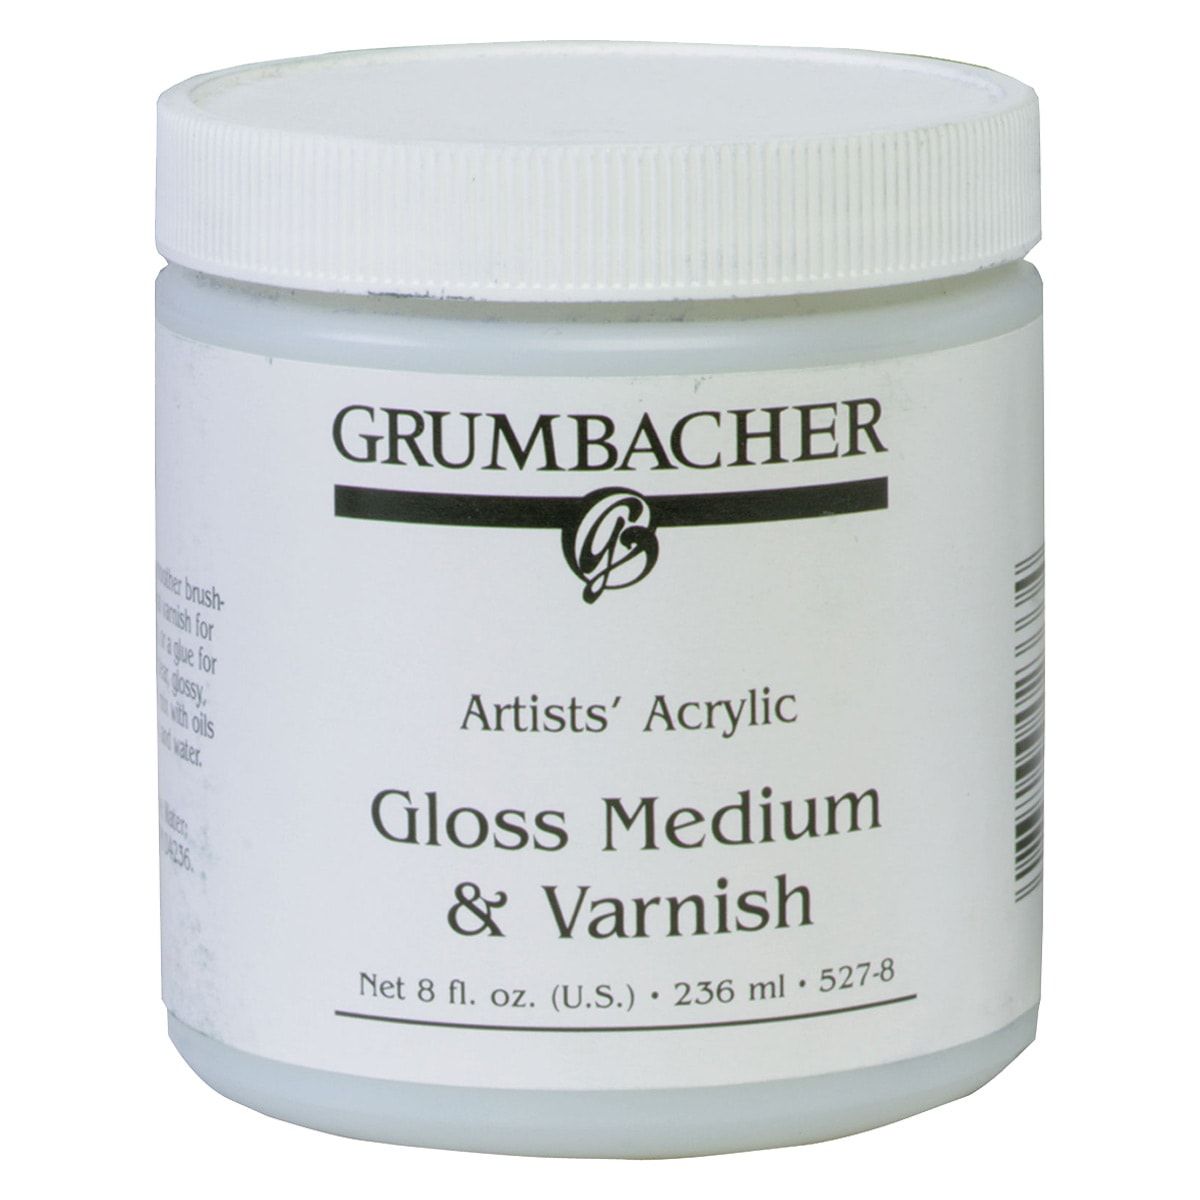 Grumbacher Acrylic Medium - Gloss Medium & Varnish, 8 oz